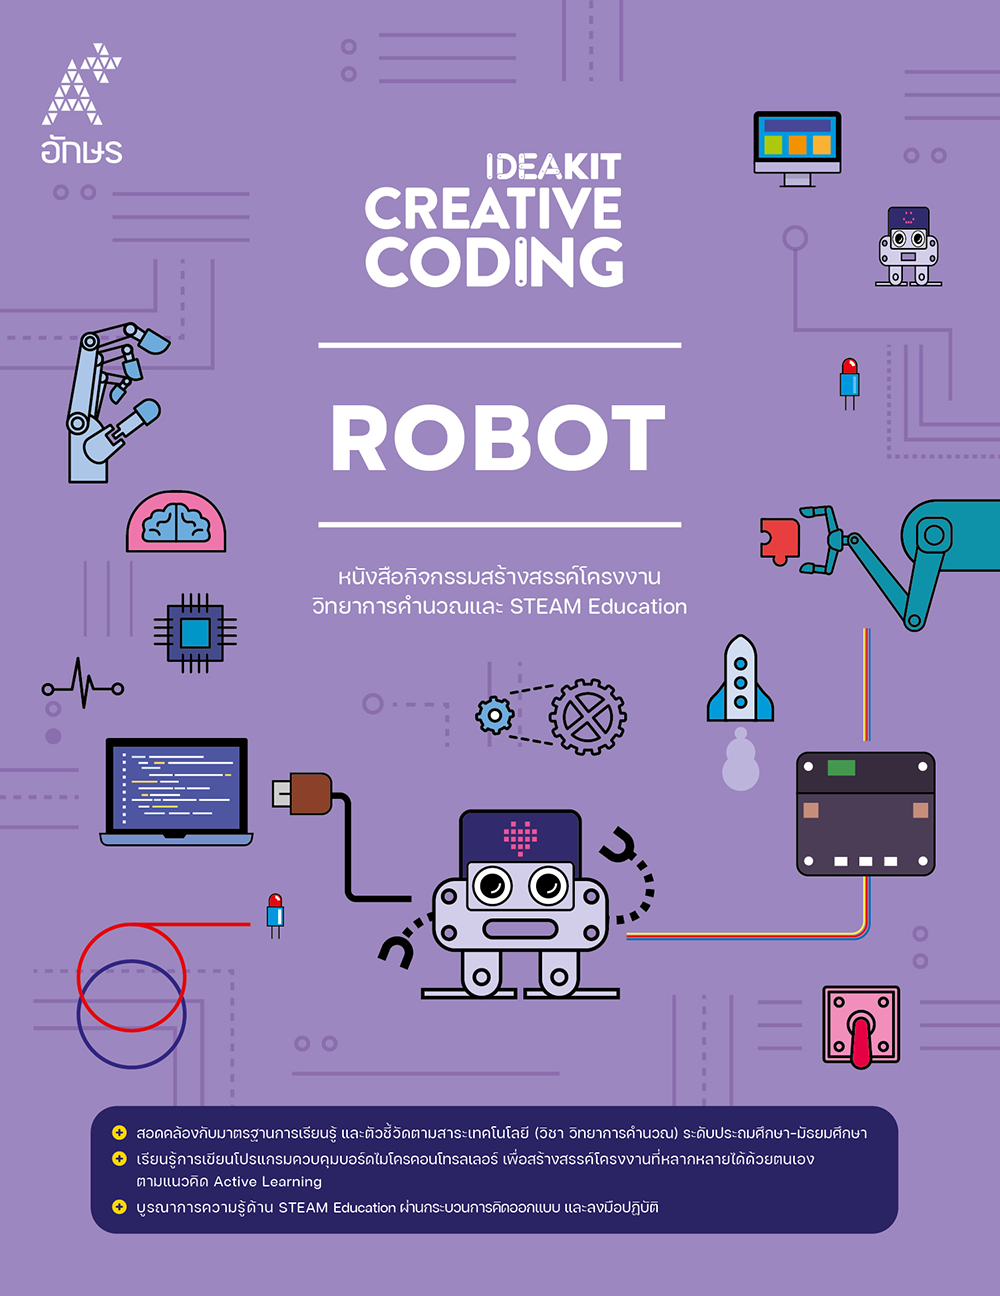 หนังสือกิจกรรม IDEAKIT: Creative Coding ชุด Robot